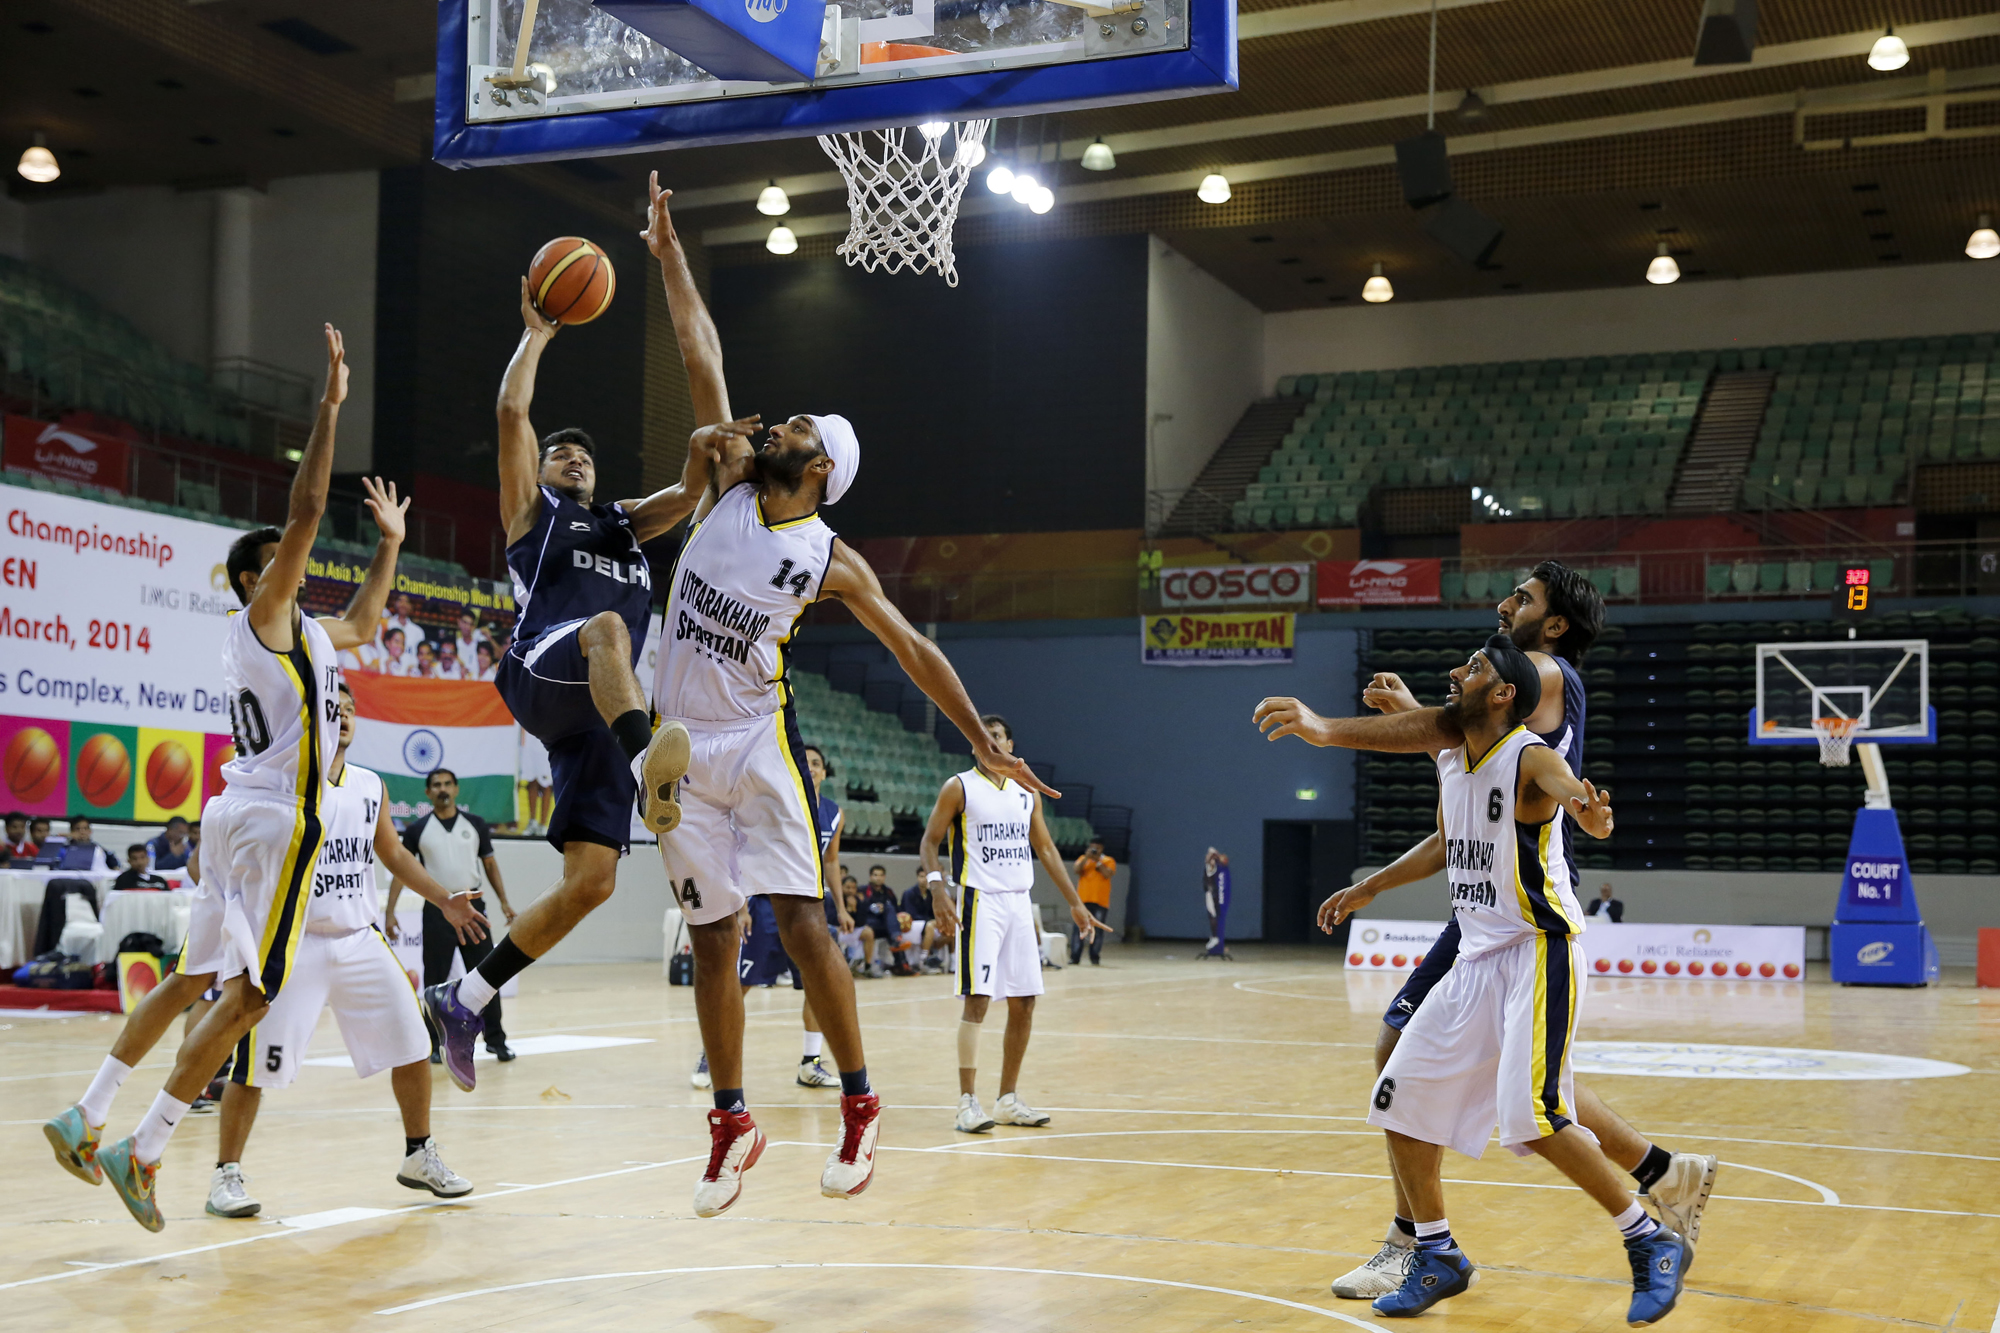 Uttrakhand vs Delhi 64th Senior National Basketball Championship for Men and Women, Delhi 2014 .